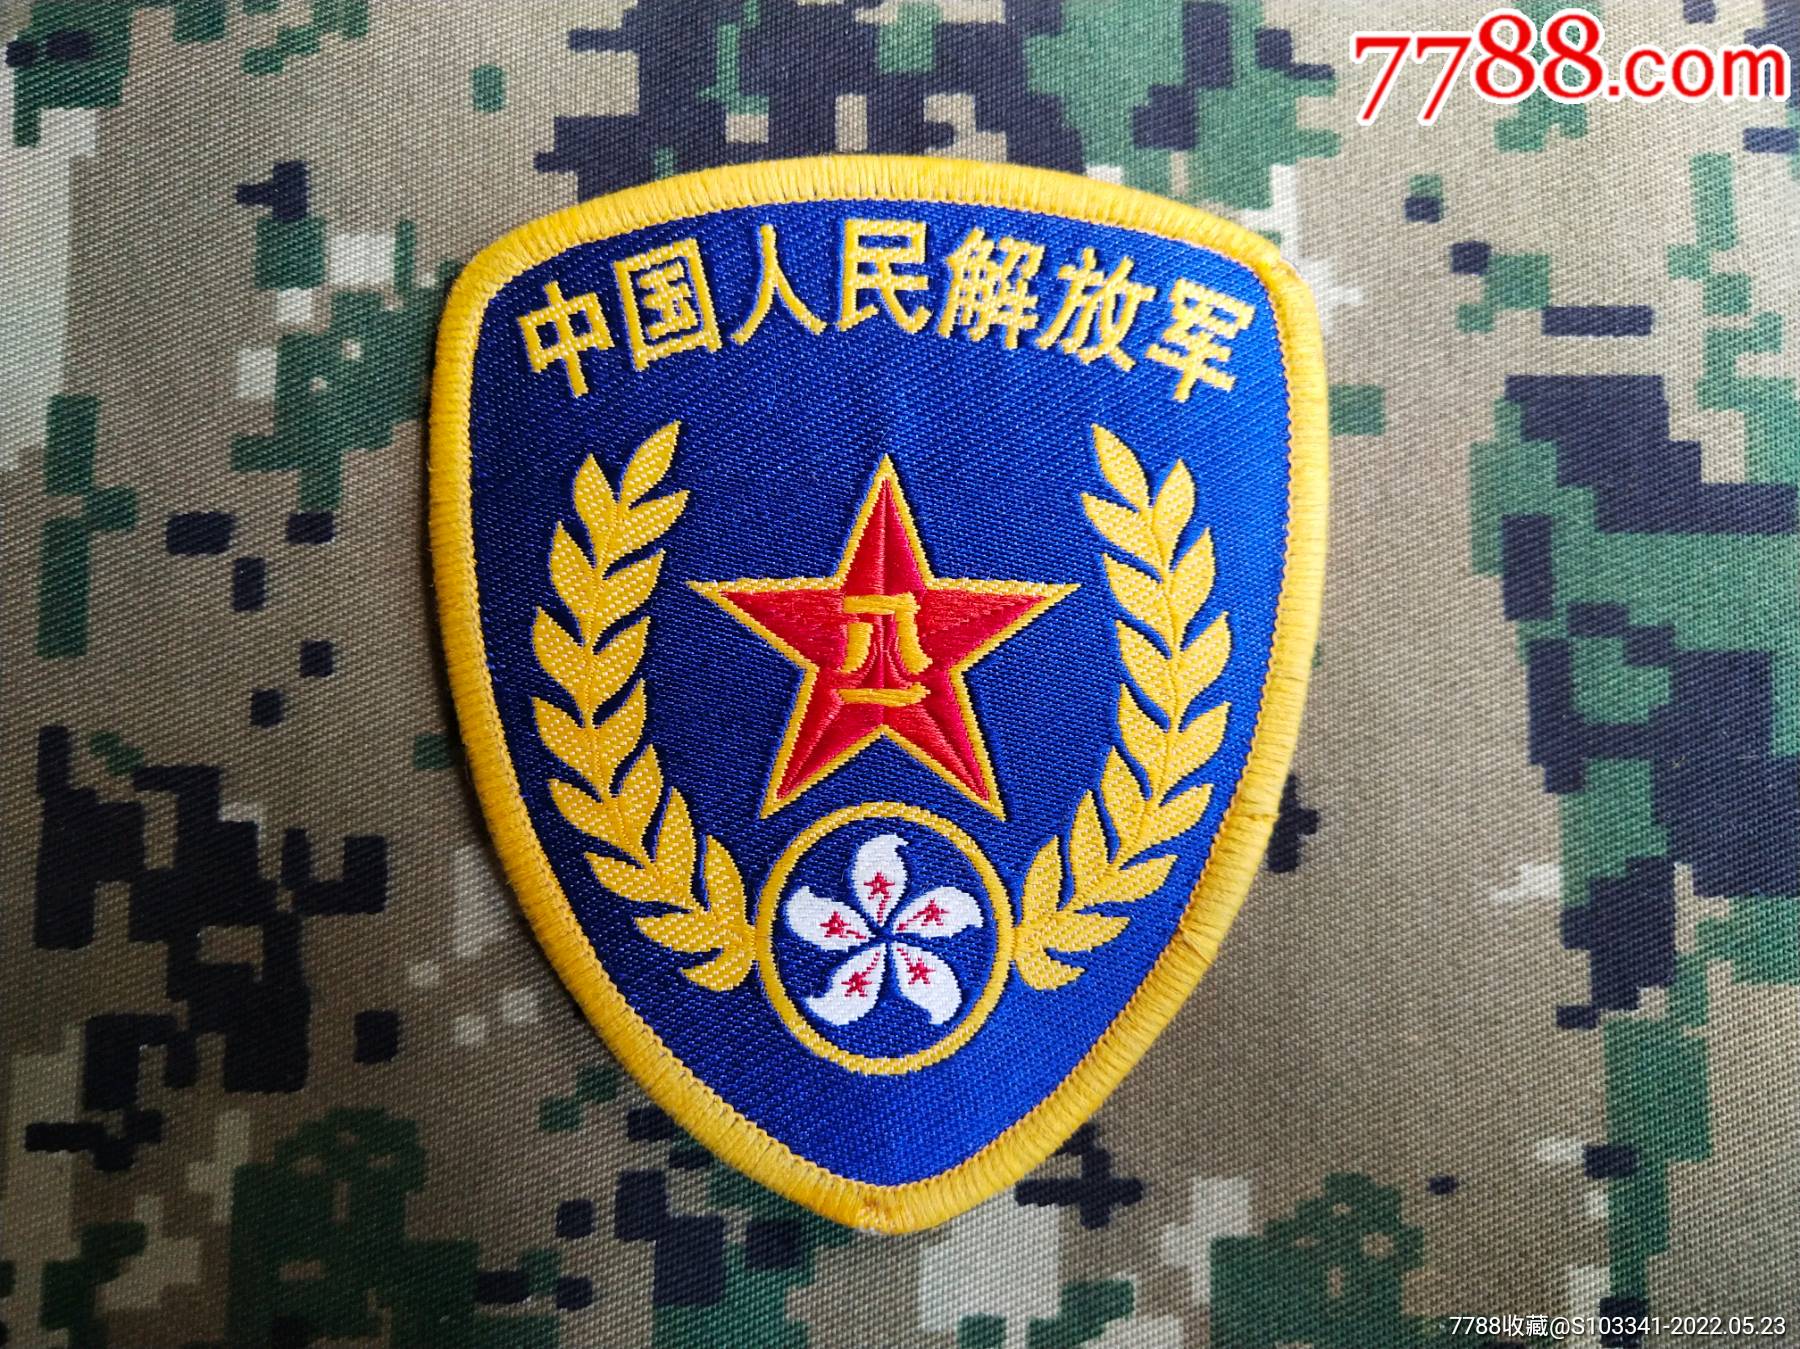 驻港部队臂章照片图片